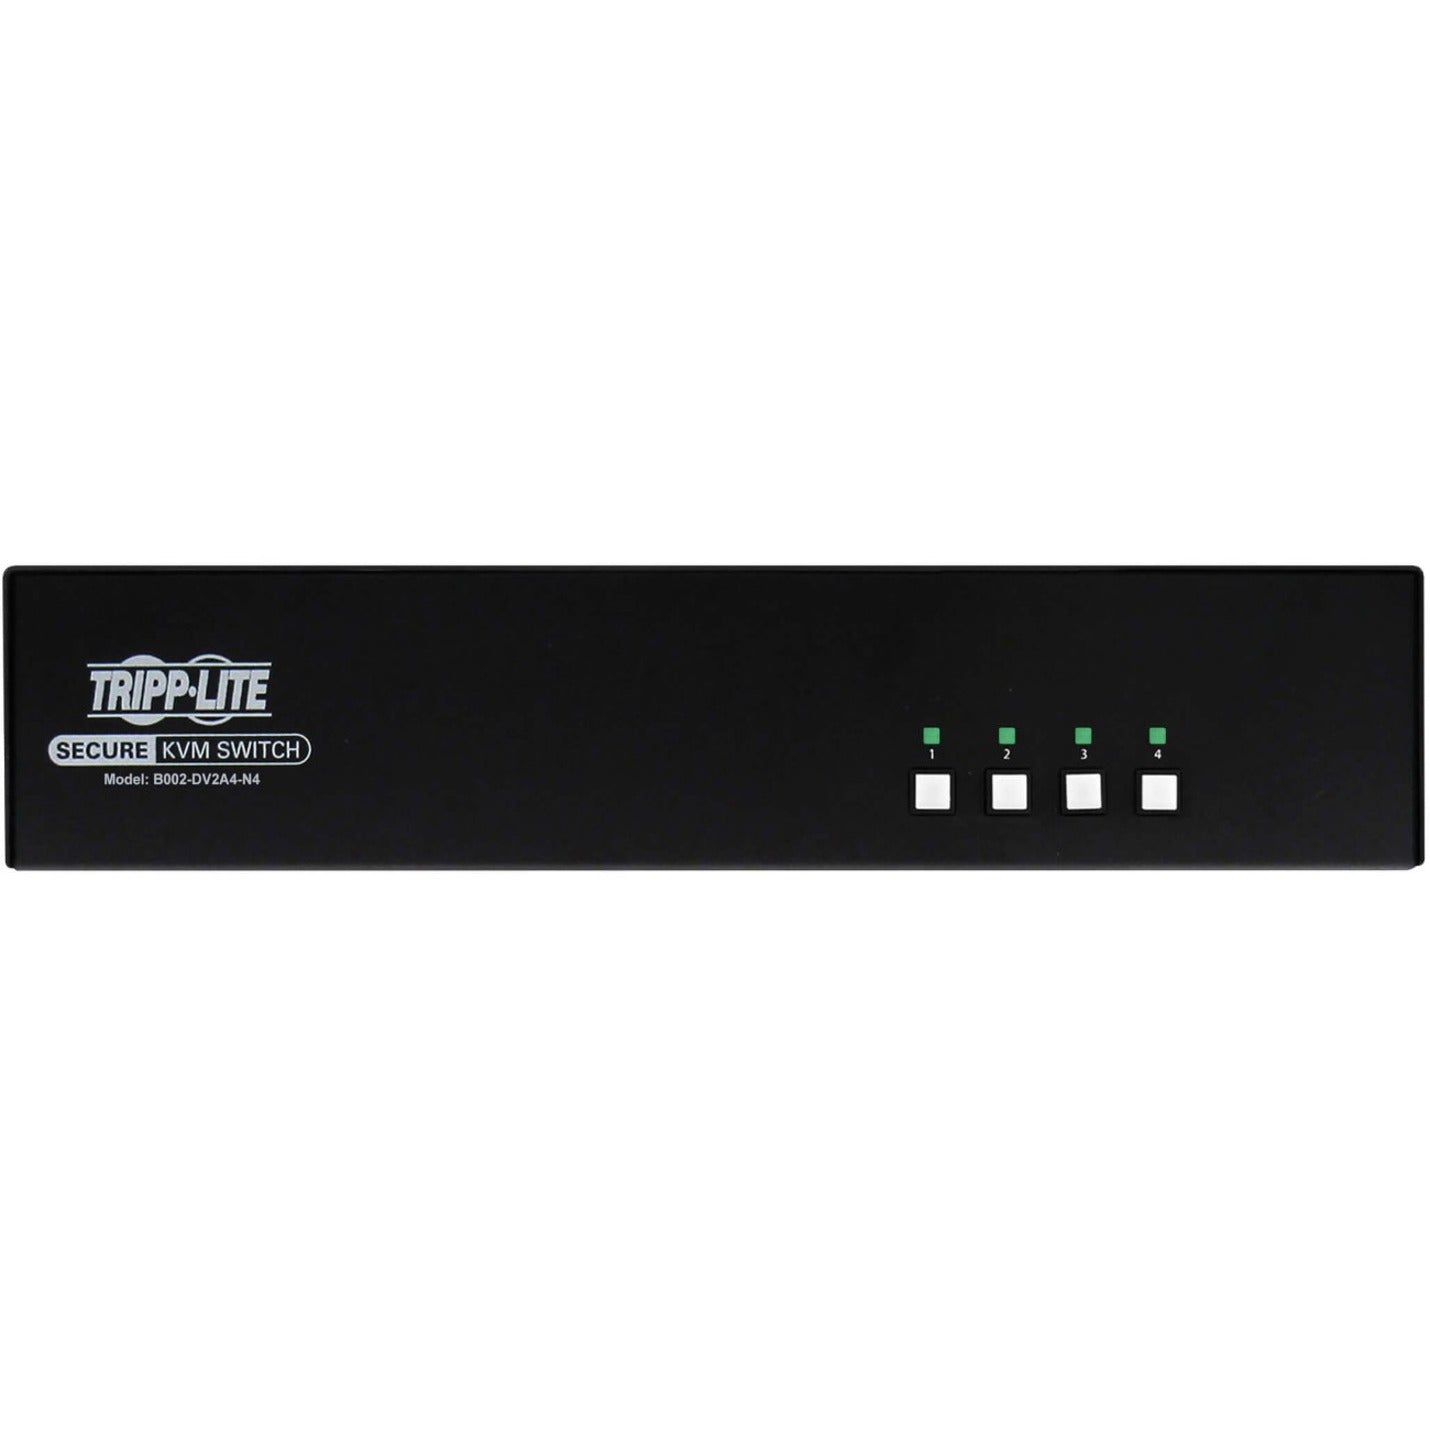 Tripp Lite B002-DV2A4-N4 Commutateur KVM sécurisé 4 ports Double tête DVI vers DVI NIAP PP4.0 TAA Résolution vidéo maximale 2560 x 1600 Garantie de 3 ans